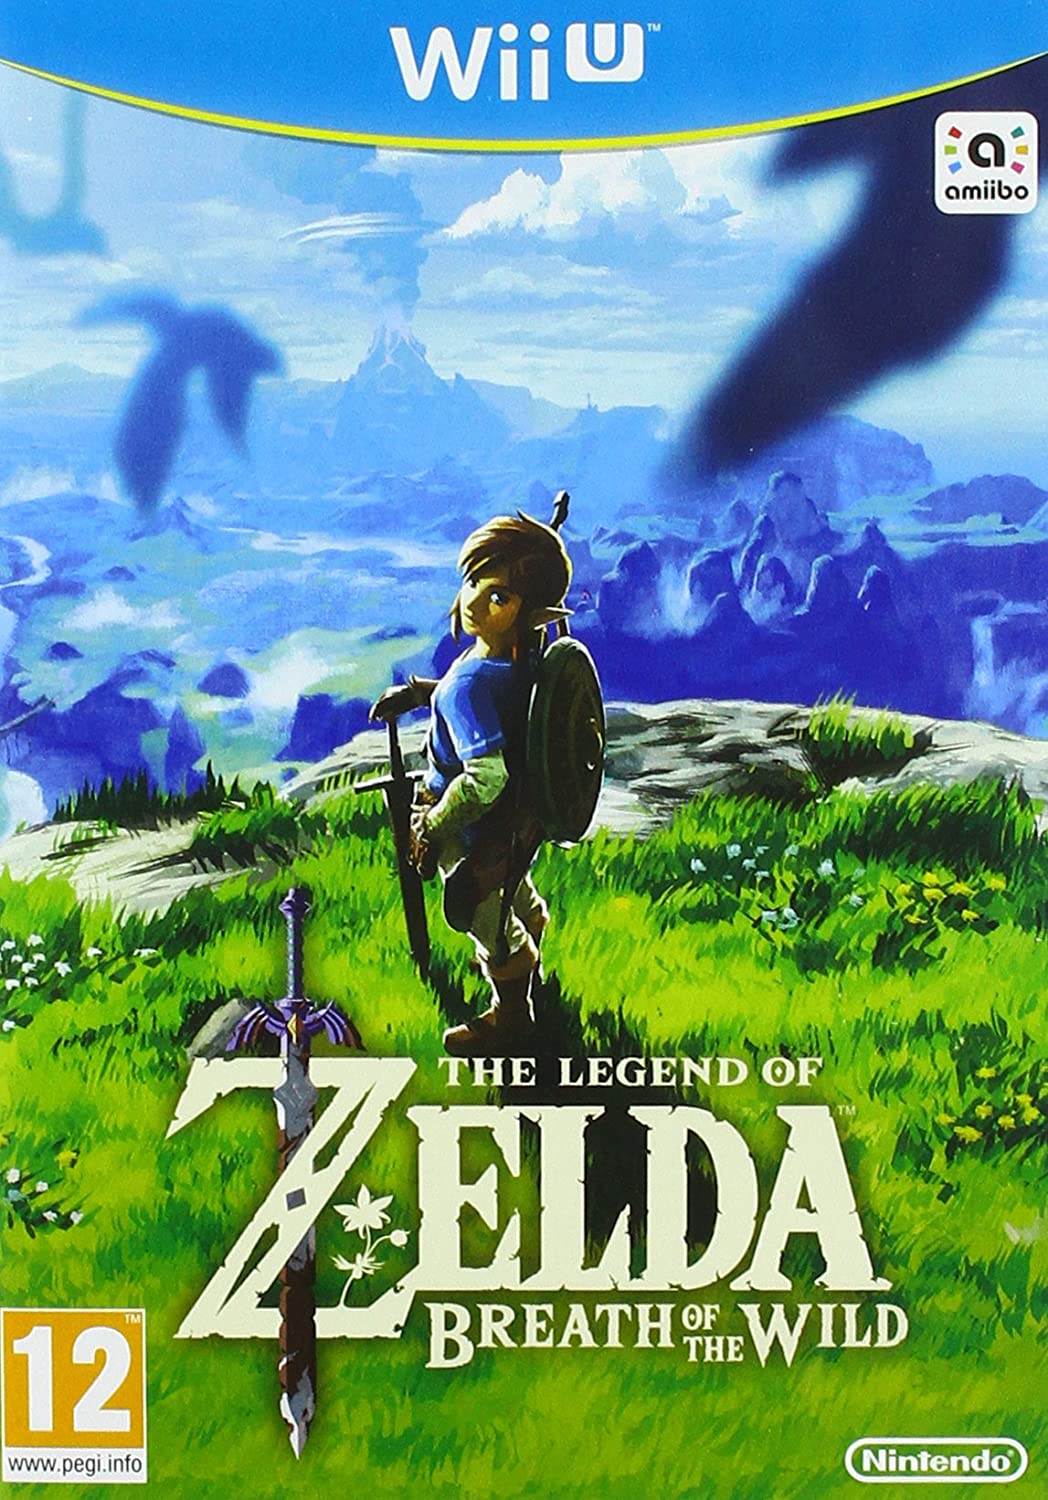 Breath | The Fandom Legend of Wild of | Nintendo Zelda: the